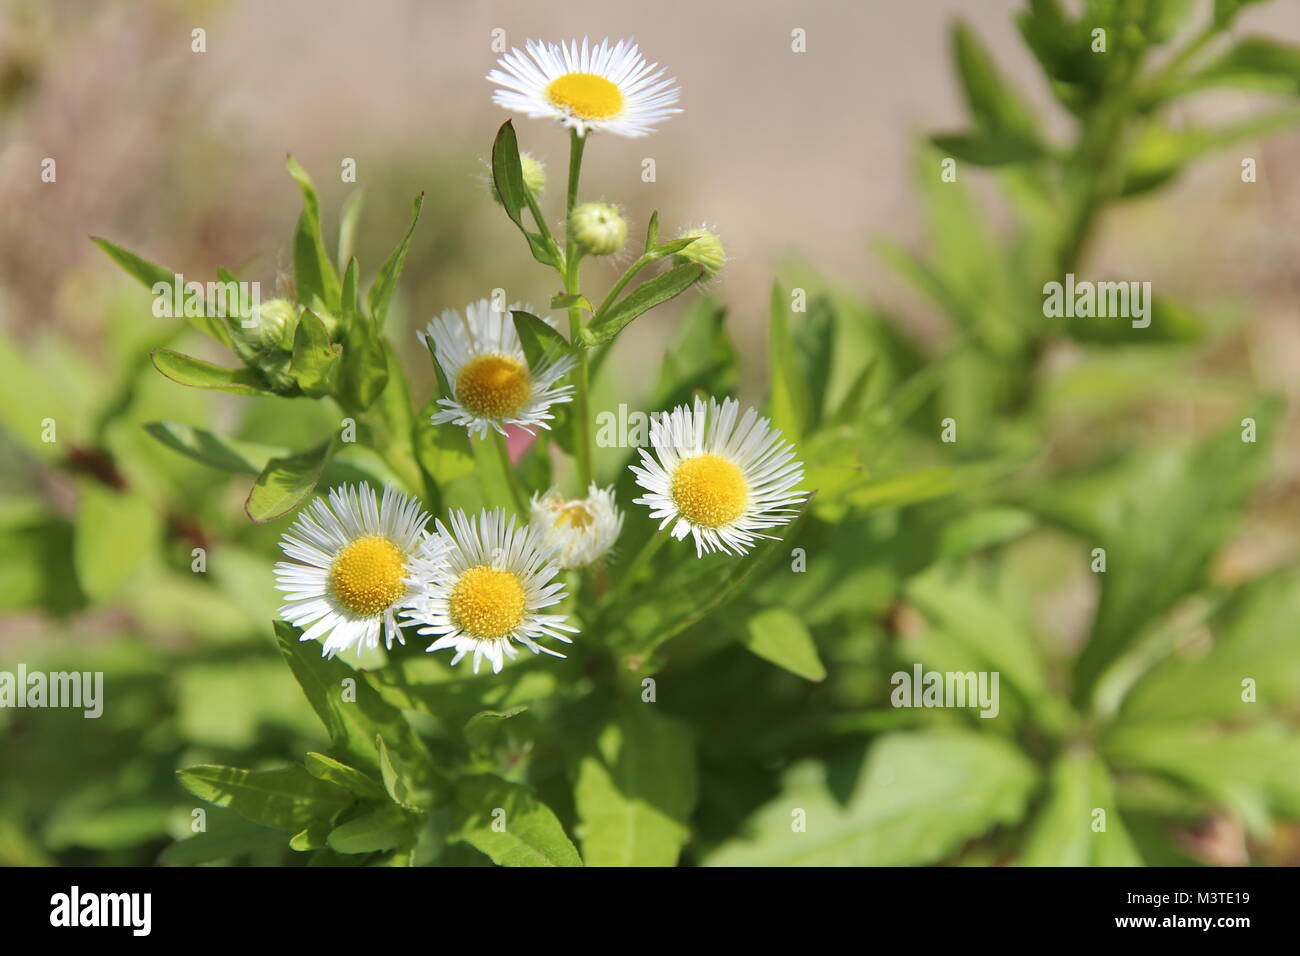 Blossom daisy fleabane (Erigeron strigosus) in sunny day, South Korea Stock Photo